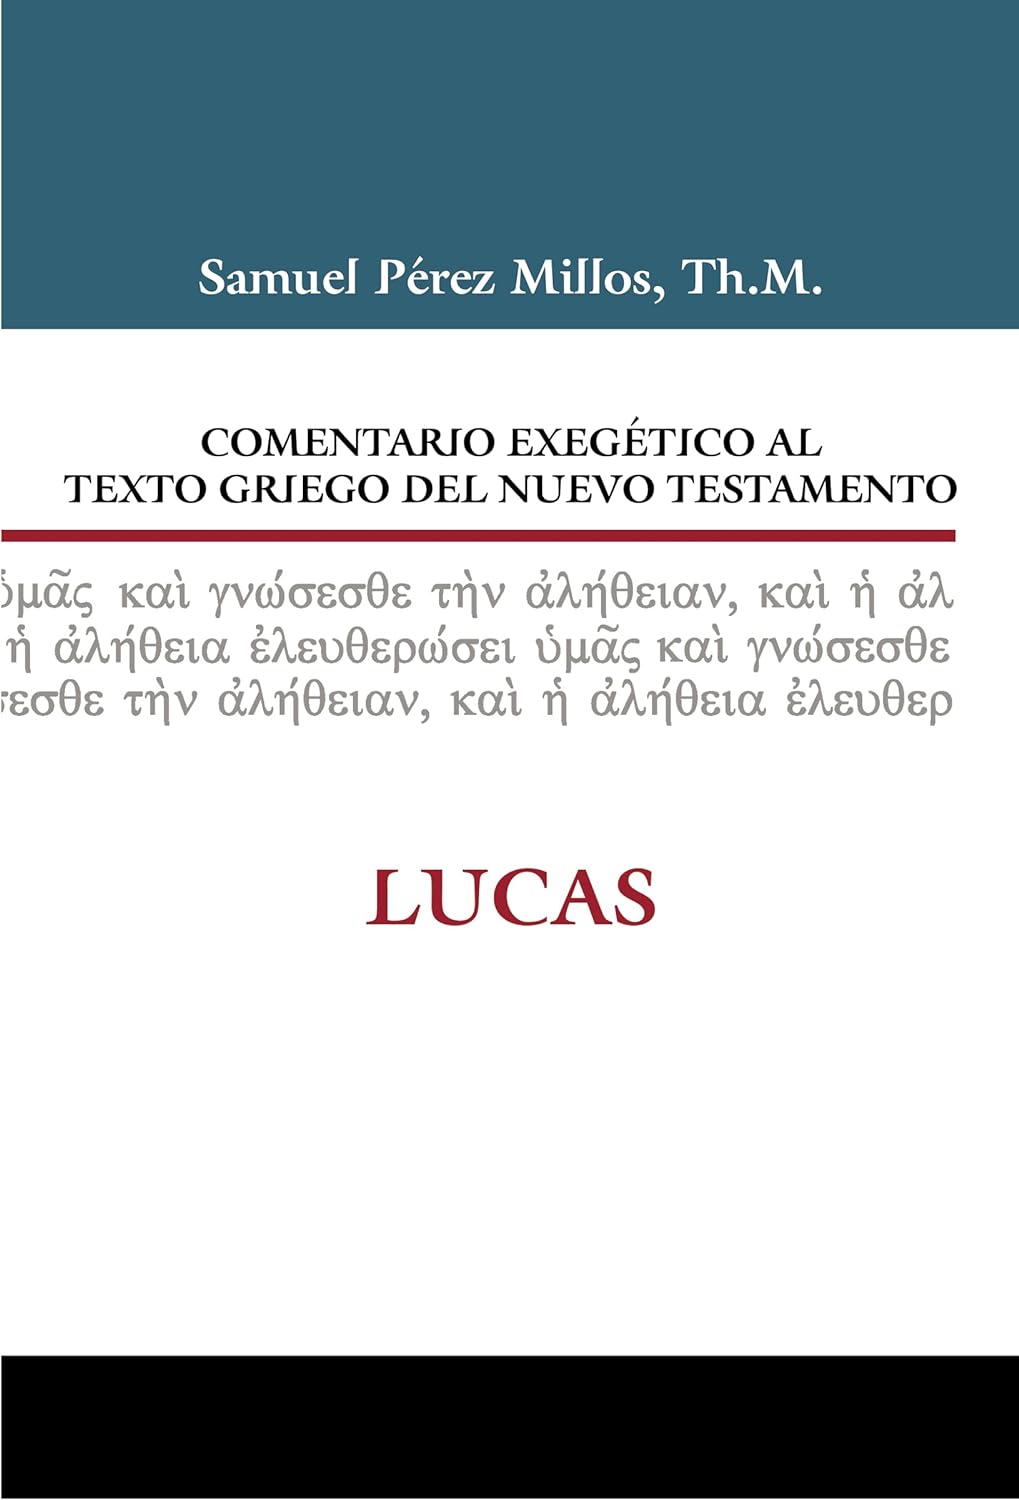 Comentario exegetico al texto griego Lucas